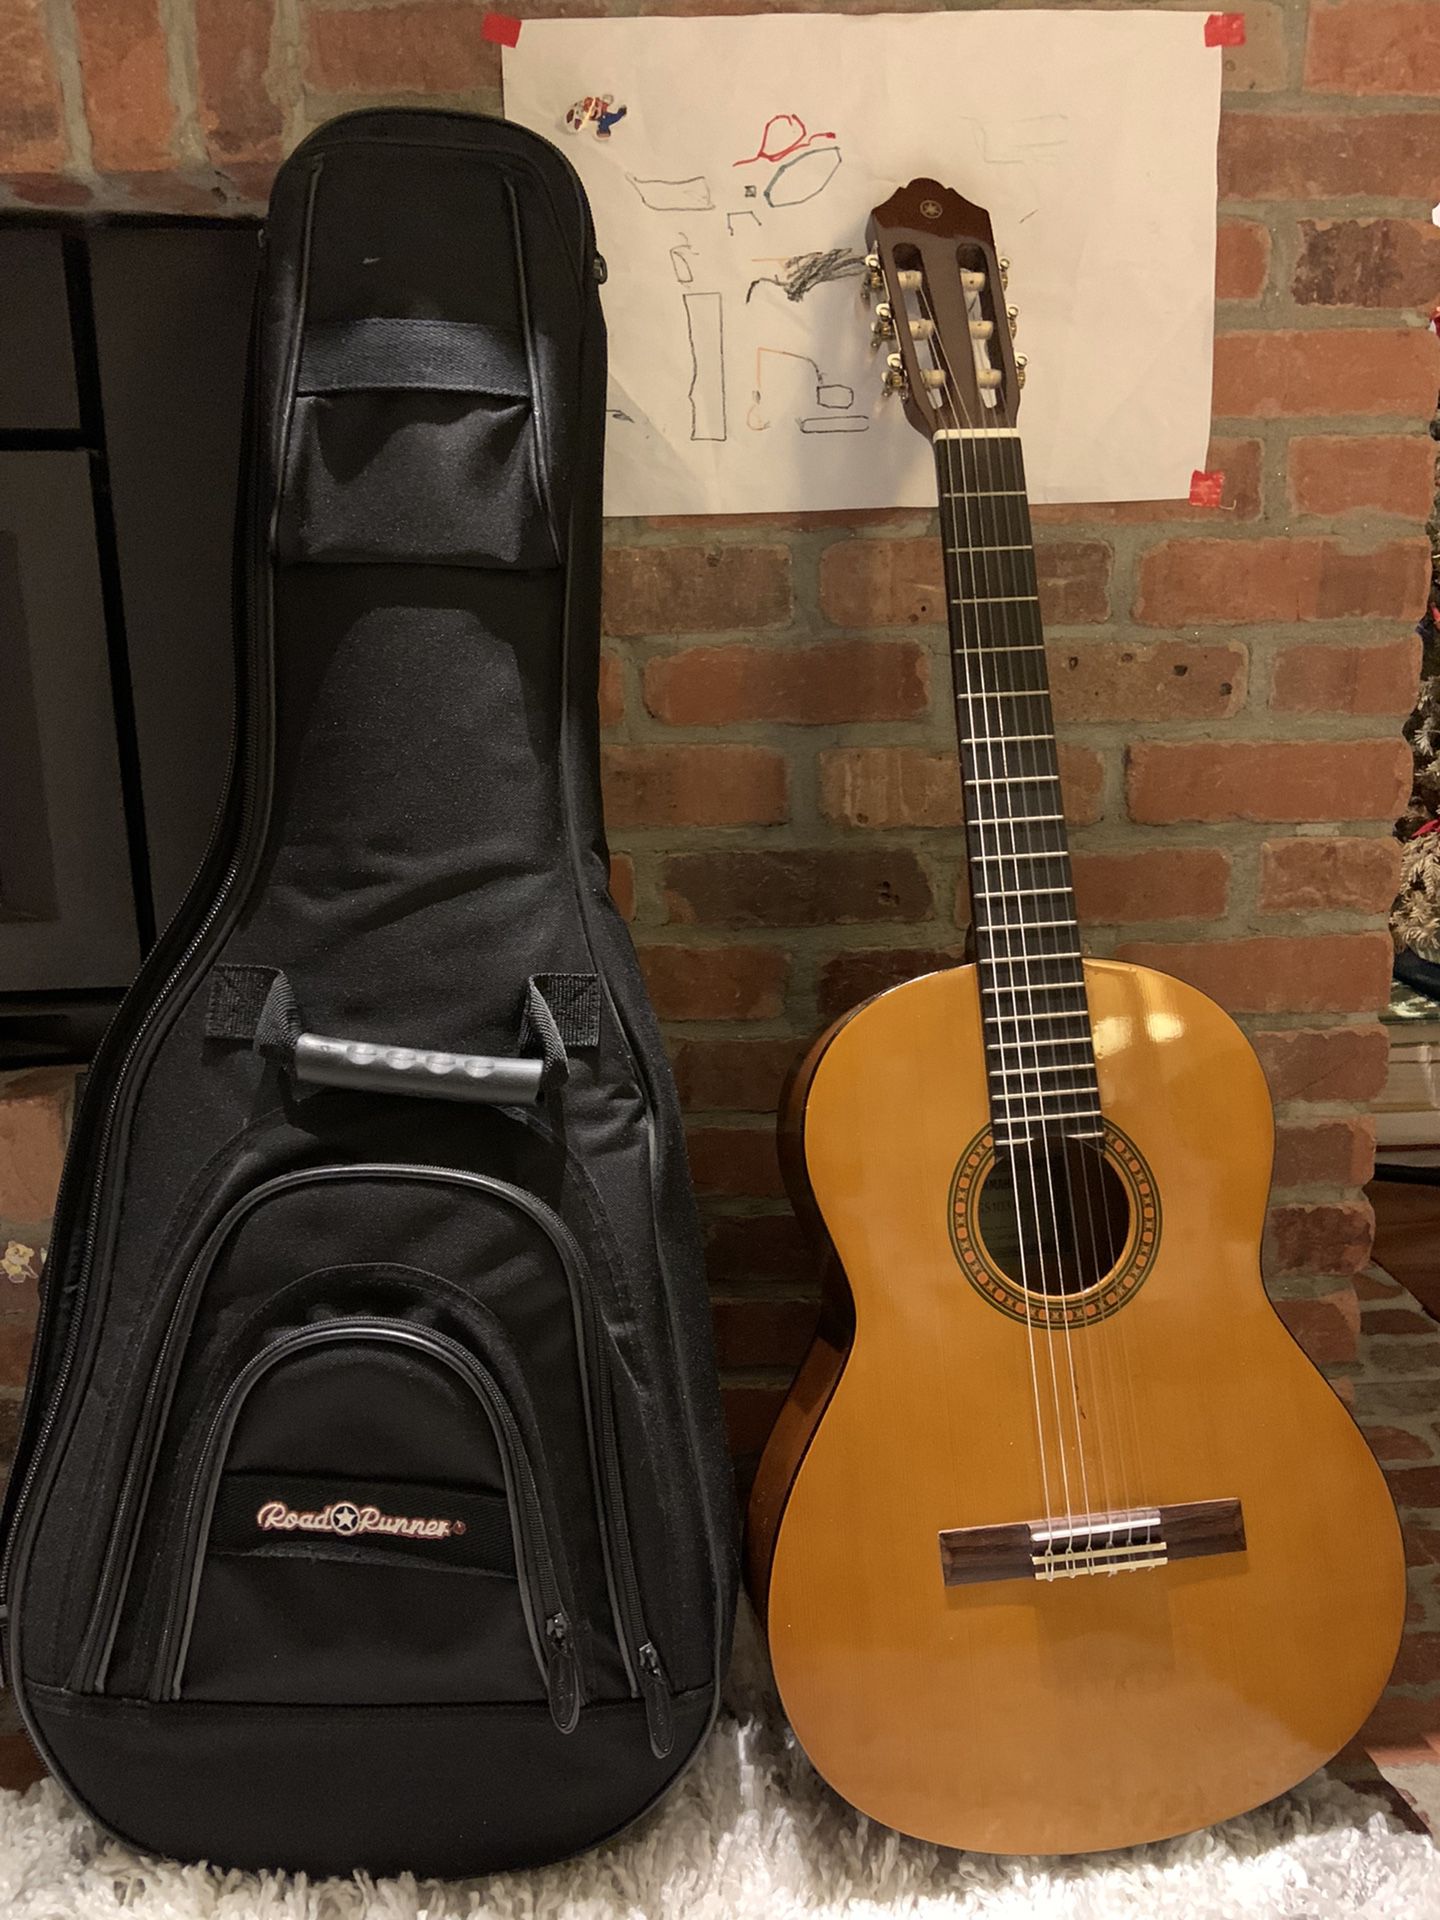 Yamaha Guitar (Model CGS103A, $100)